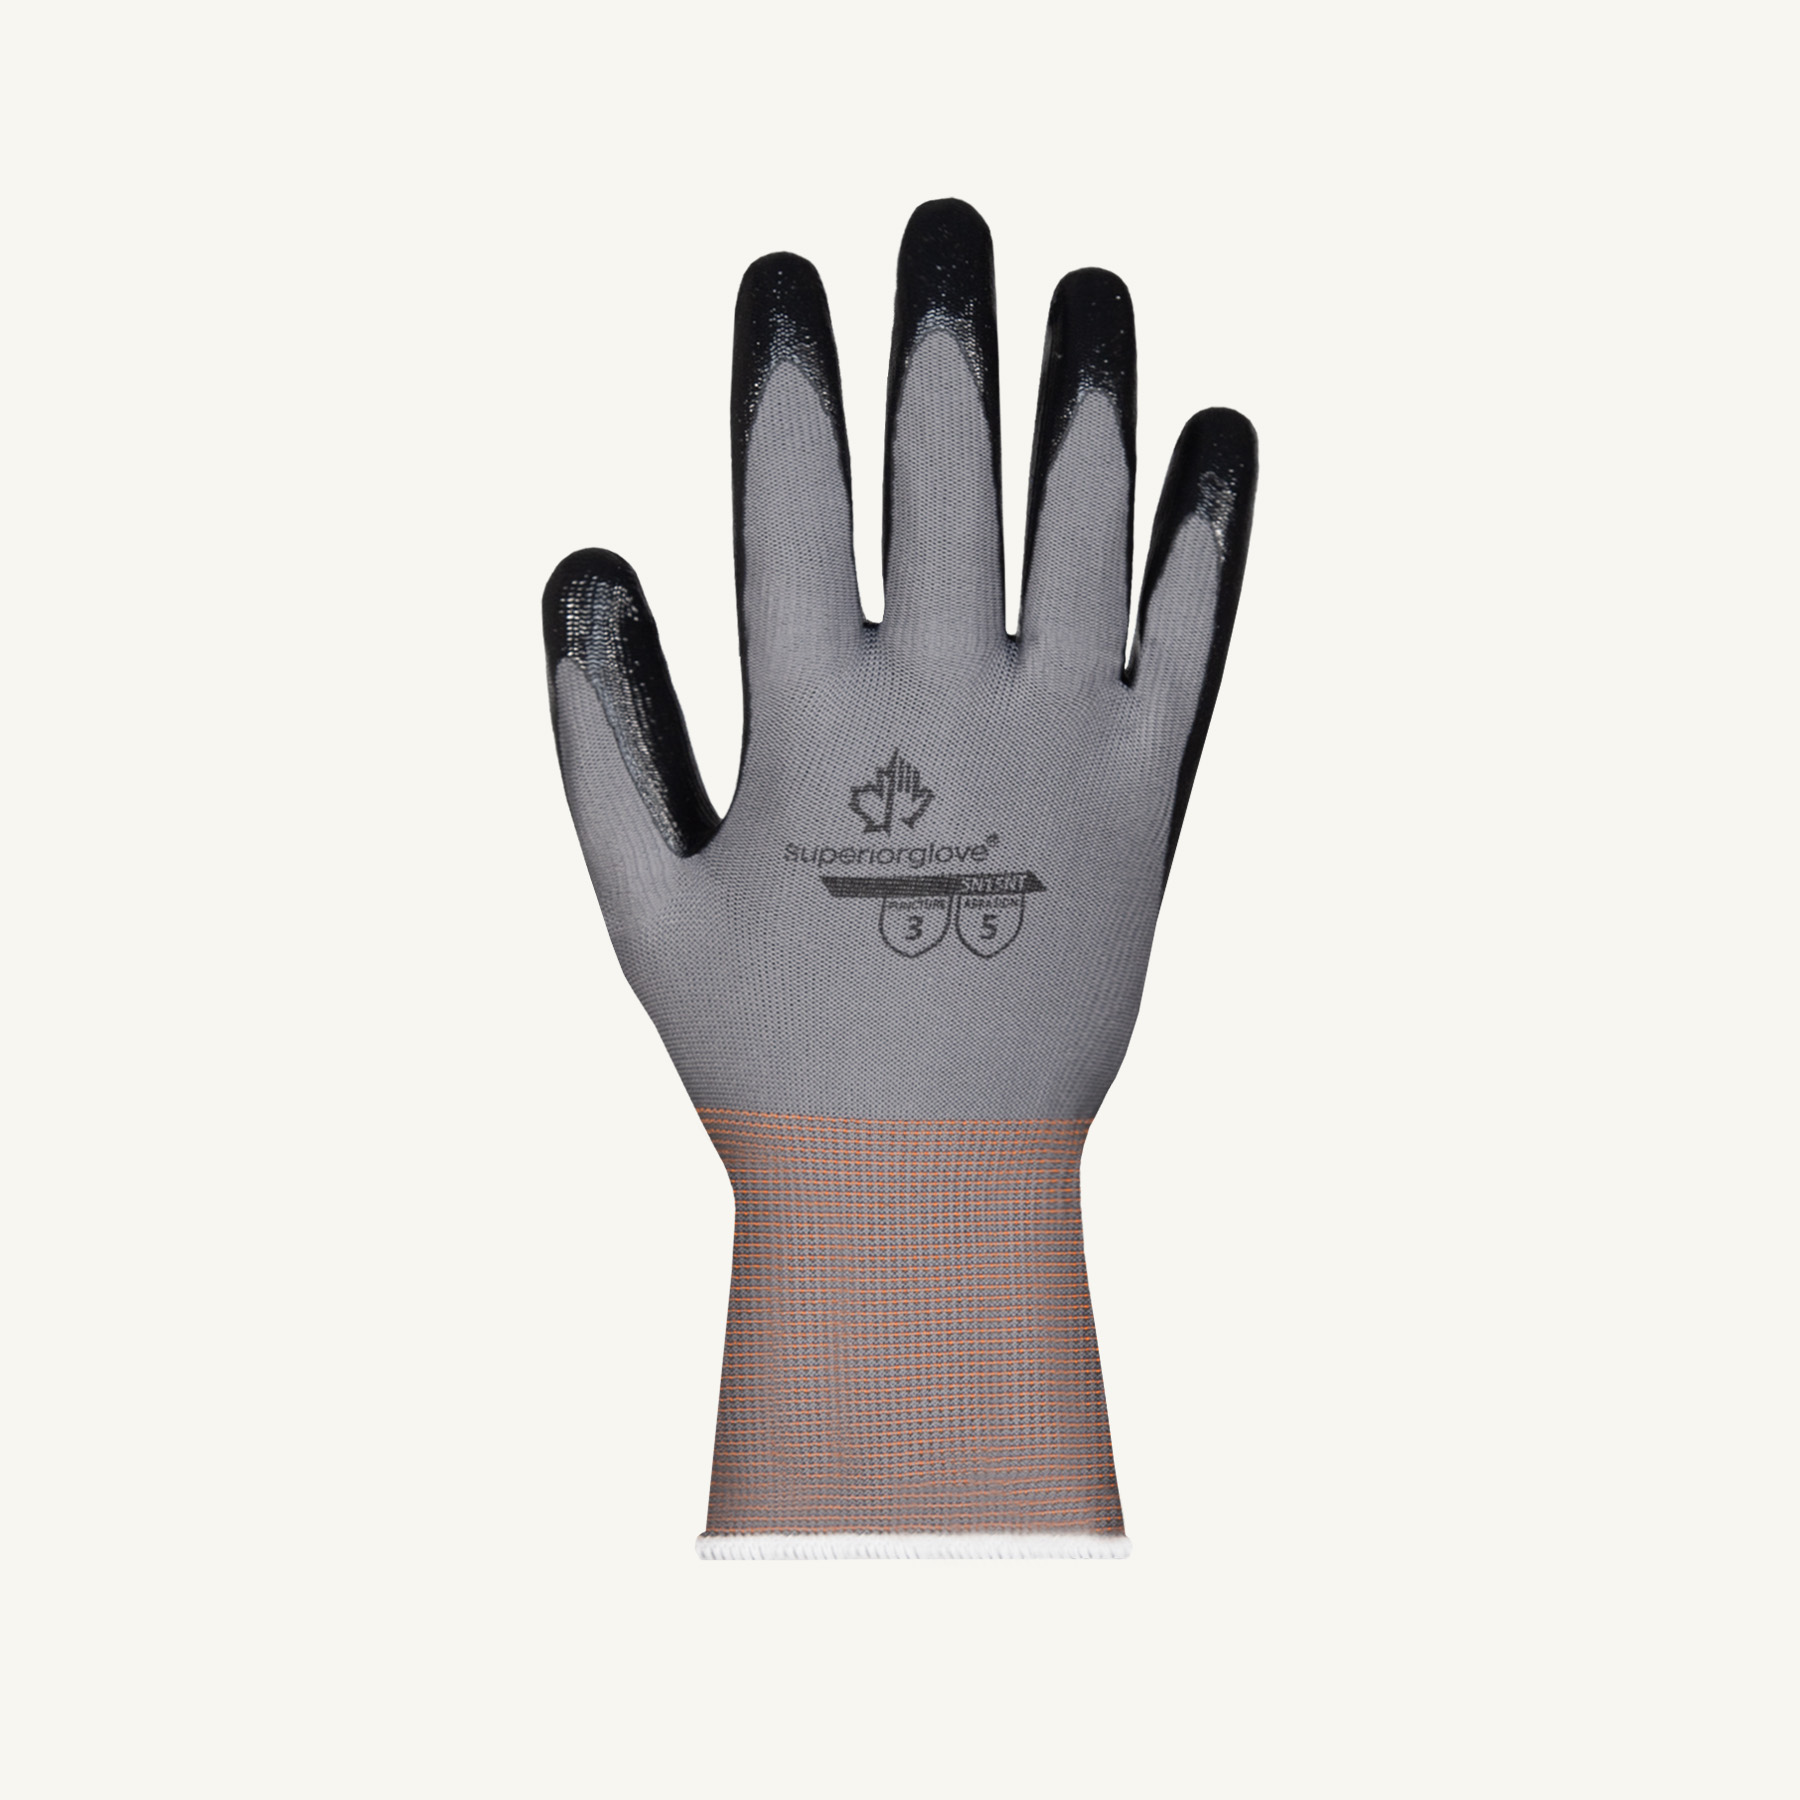 Glove Archives - Superior Glove